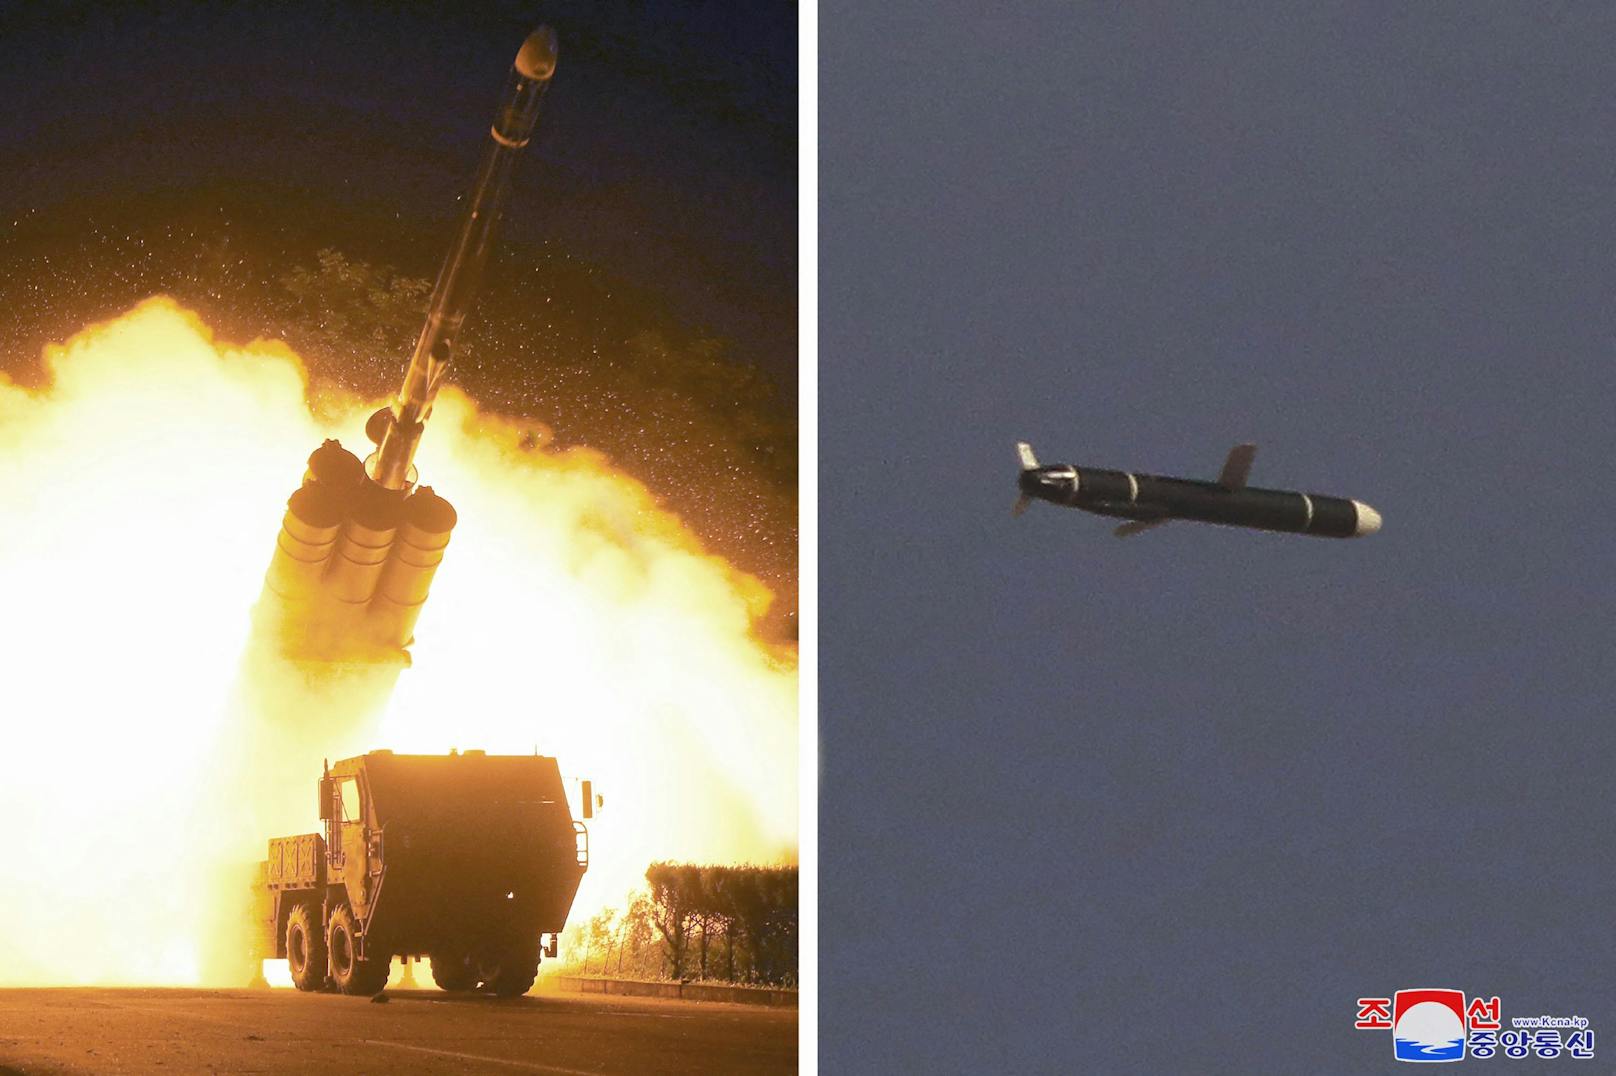 Wie die amtliche Nachrichtenagentur Korean Central News Agency (KCNA) meldet, wurde eine neue "Langstreckenrakete" getestet.